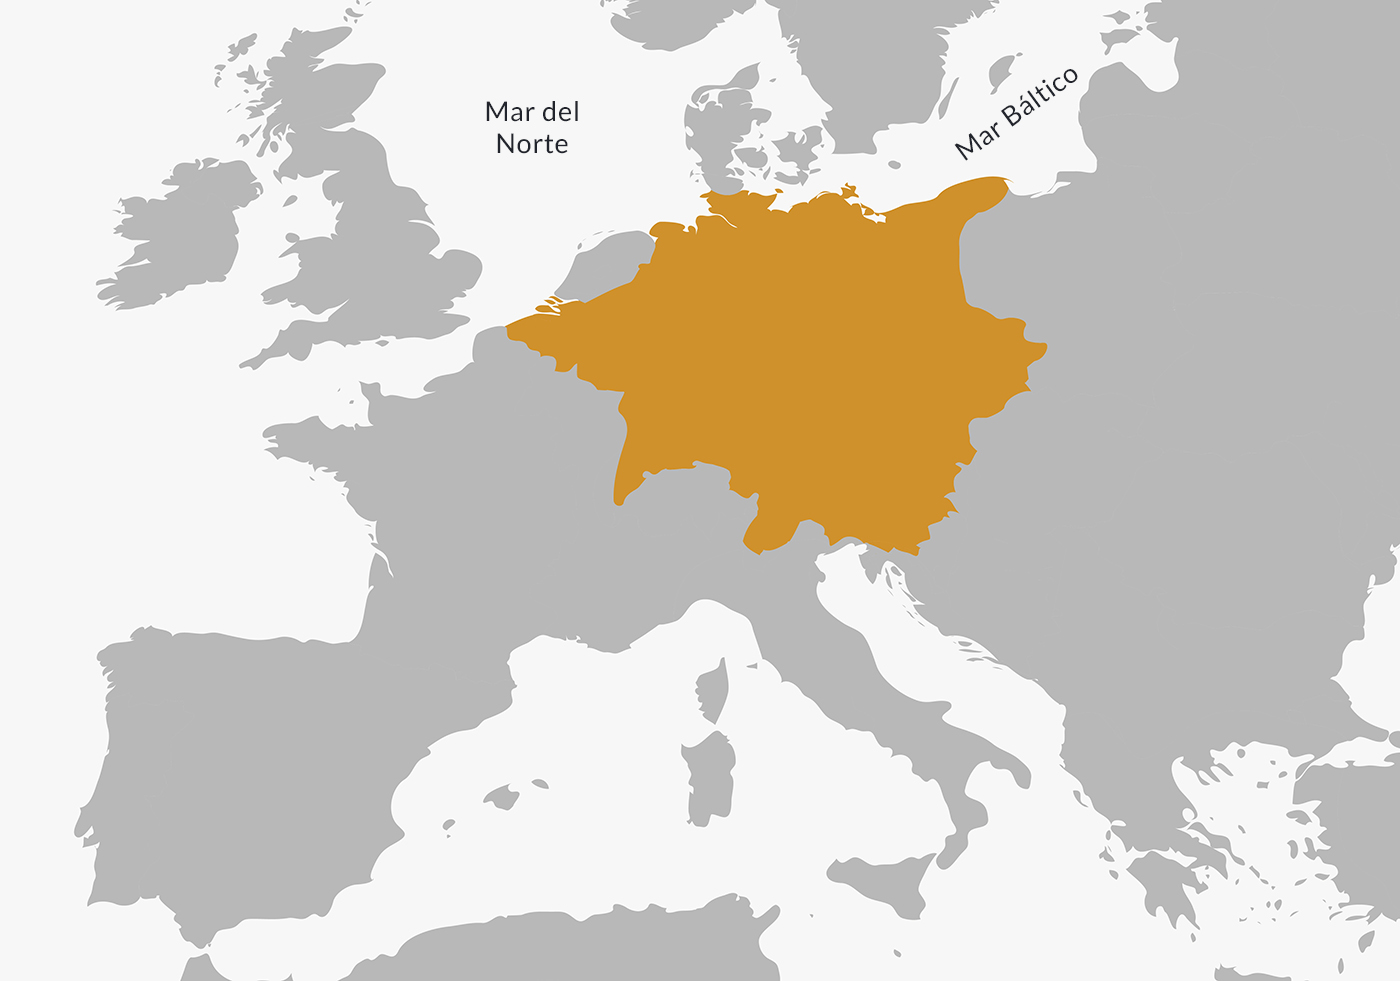 El Sacro Imperio Romano Germánico en 1648, luego de la Paz de Westfalia.